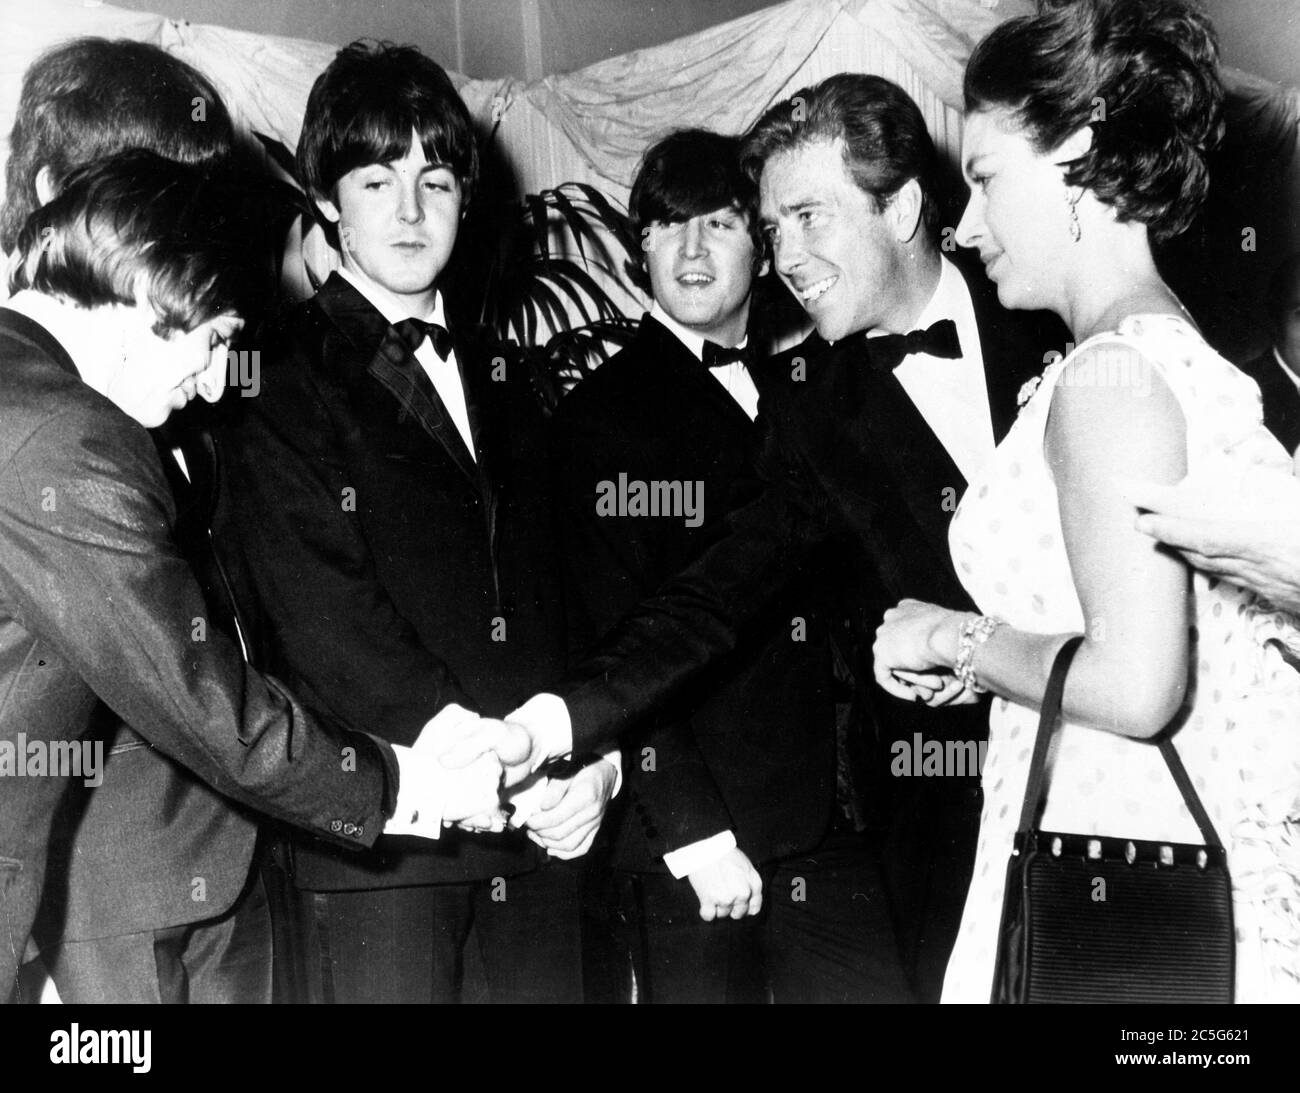 30. Juli 1965 - London, England, Vereinigtes Königreich - H.R.H. PRINZESSIN MARGARET, rechts, begleitet von ihrem Mann Lord SNOWDON, zweiter von rechts, bei der Weltpremiere DES BEATLES-neuen Films 'Help', der im Londoner Pavillon stattfand. Lord Snowdon schüttelt sich die Hände mit RINGO STARR, Left, als die Prinzessin, PAUL McCartney, Second from Left, JOHN LENNON, Center, und die Beatles bei der Vorführung des Films zusammentreffen. (Bild: © Keystone Press Agency/Keystone USA via ZUMAPRESS.com) Stockfoto